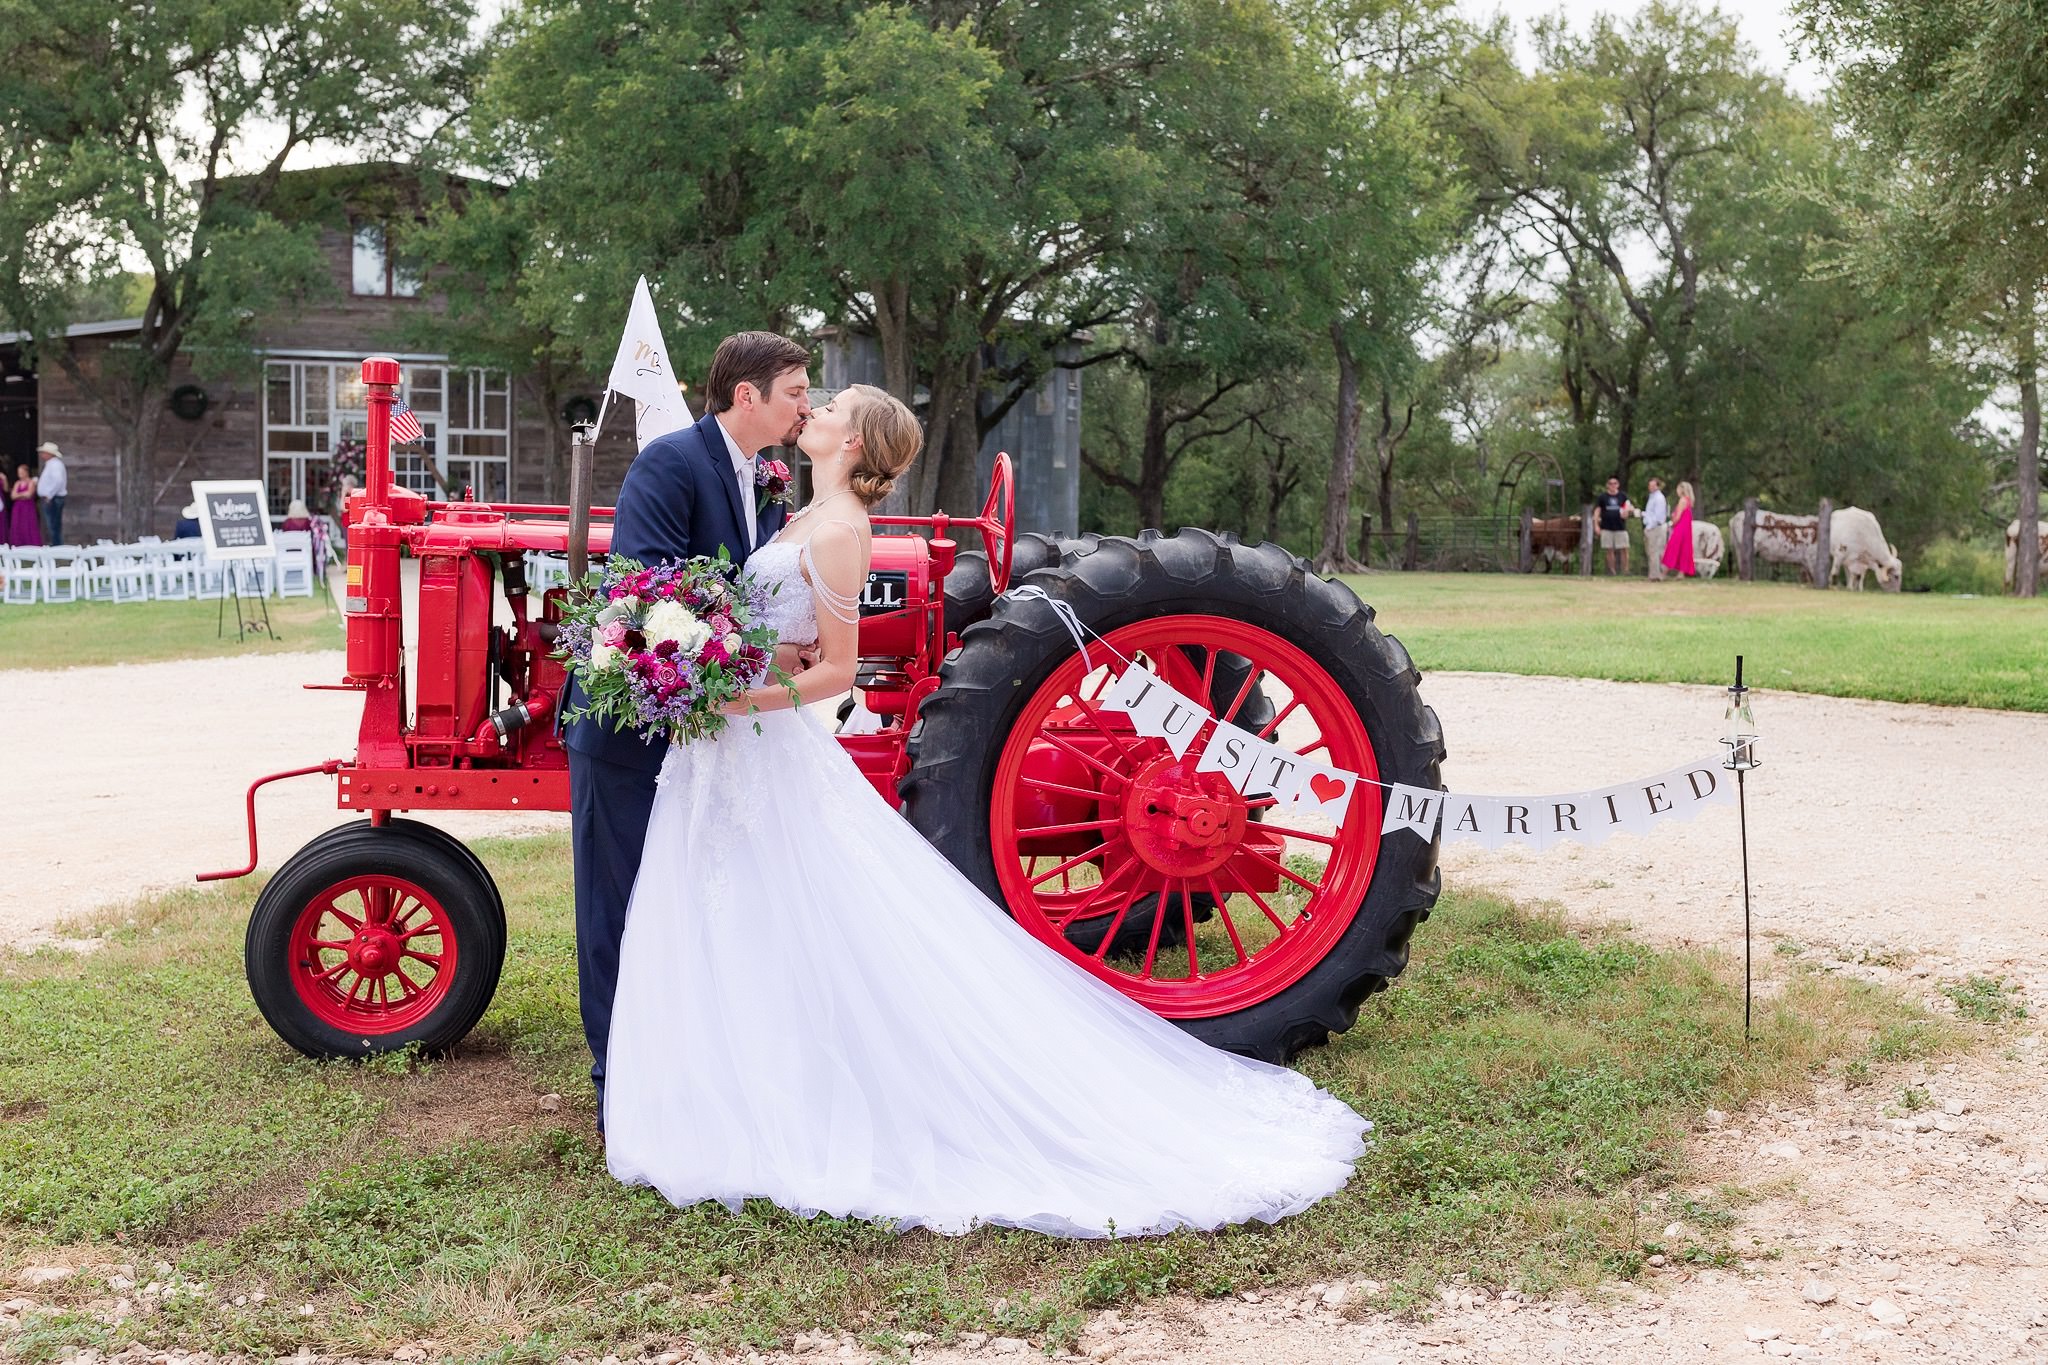 A Summer Wedding at Harper Hill Ranch by Dawn Elizabeth Studios, San Antonio Wedding Photographer